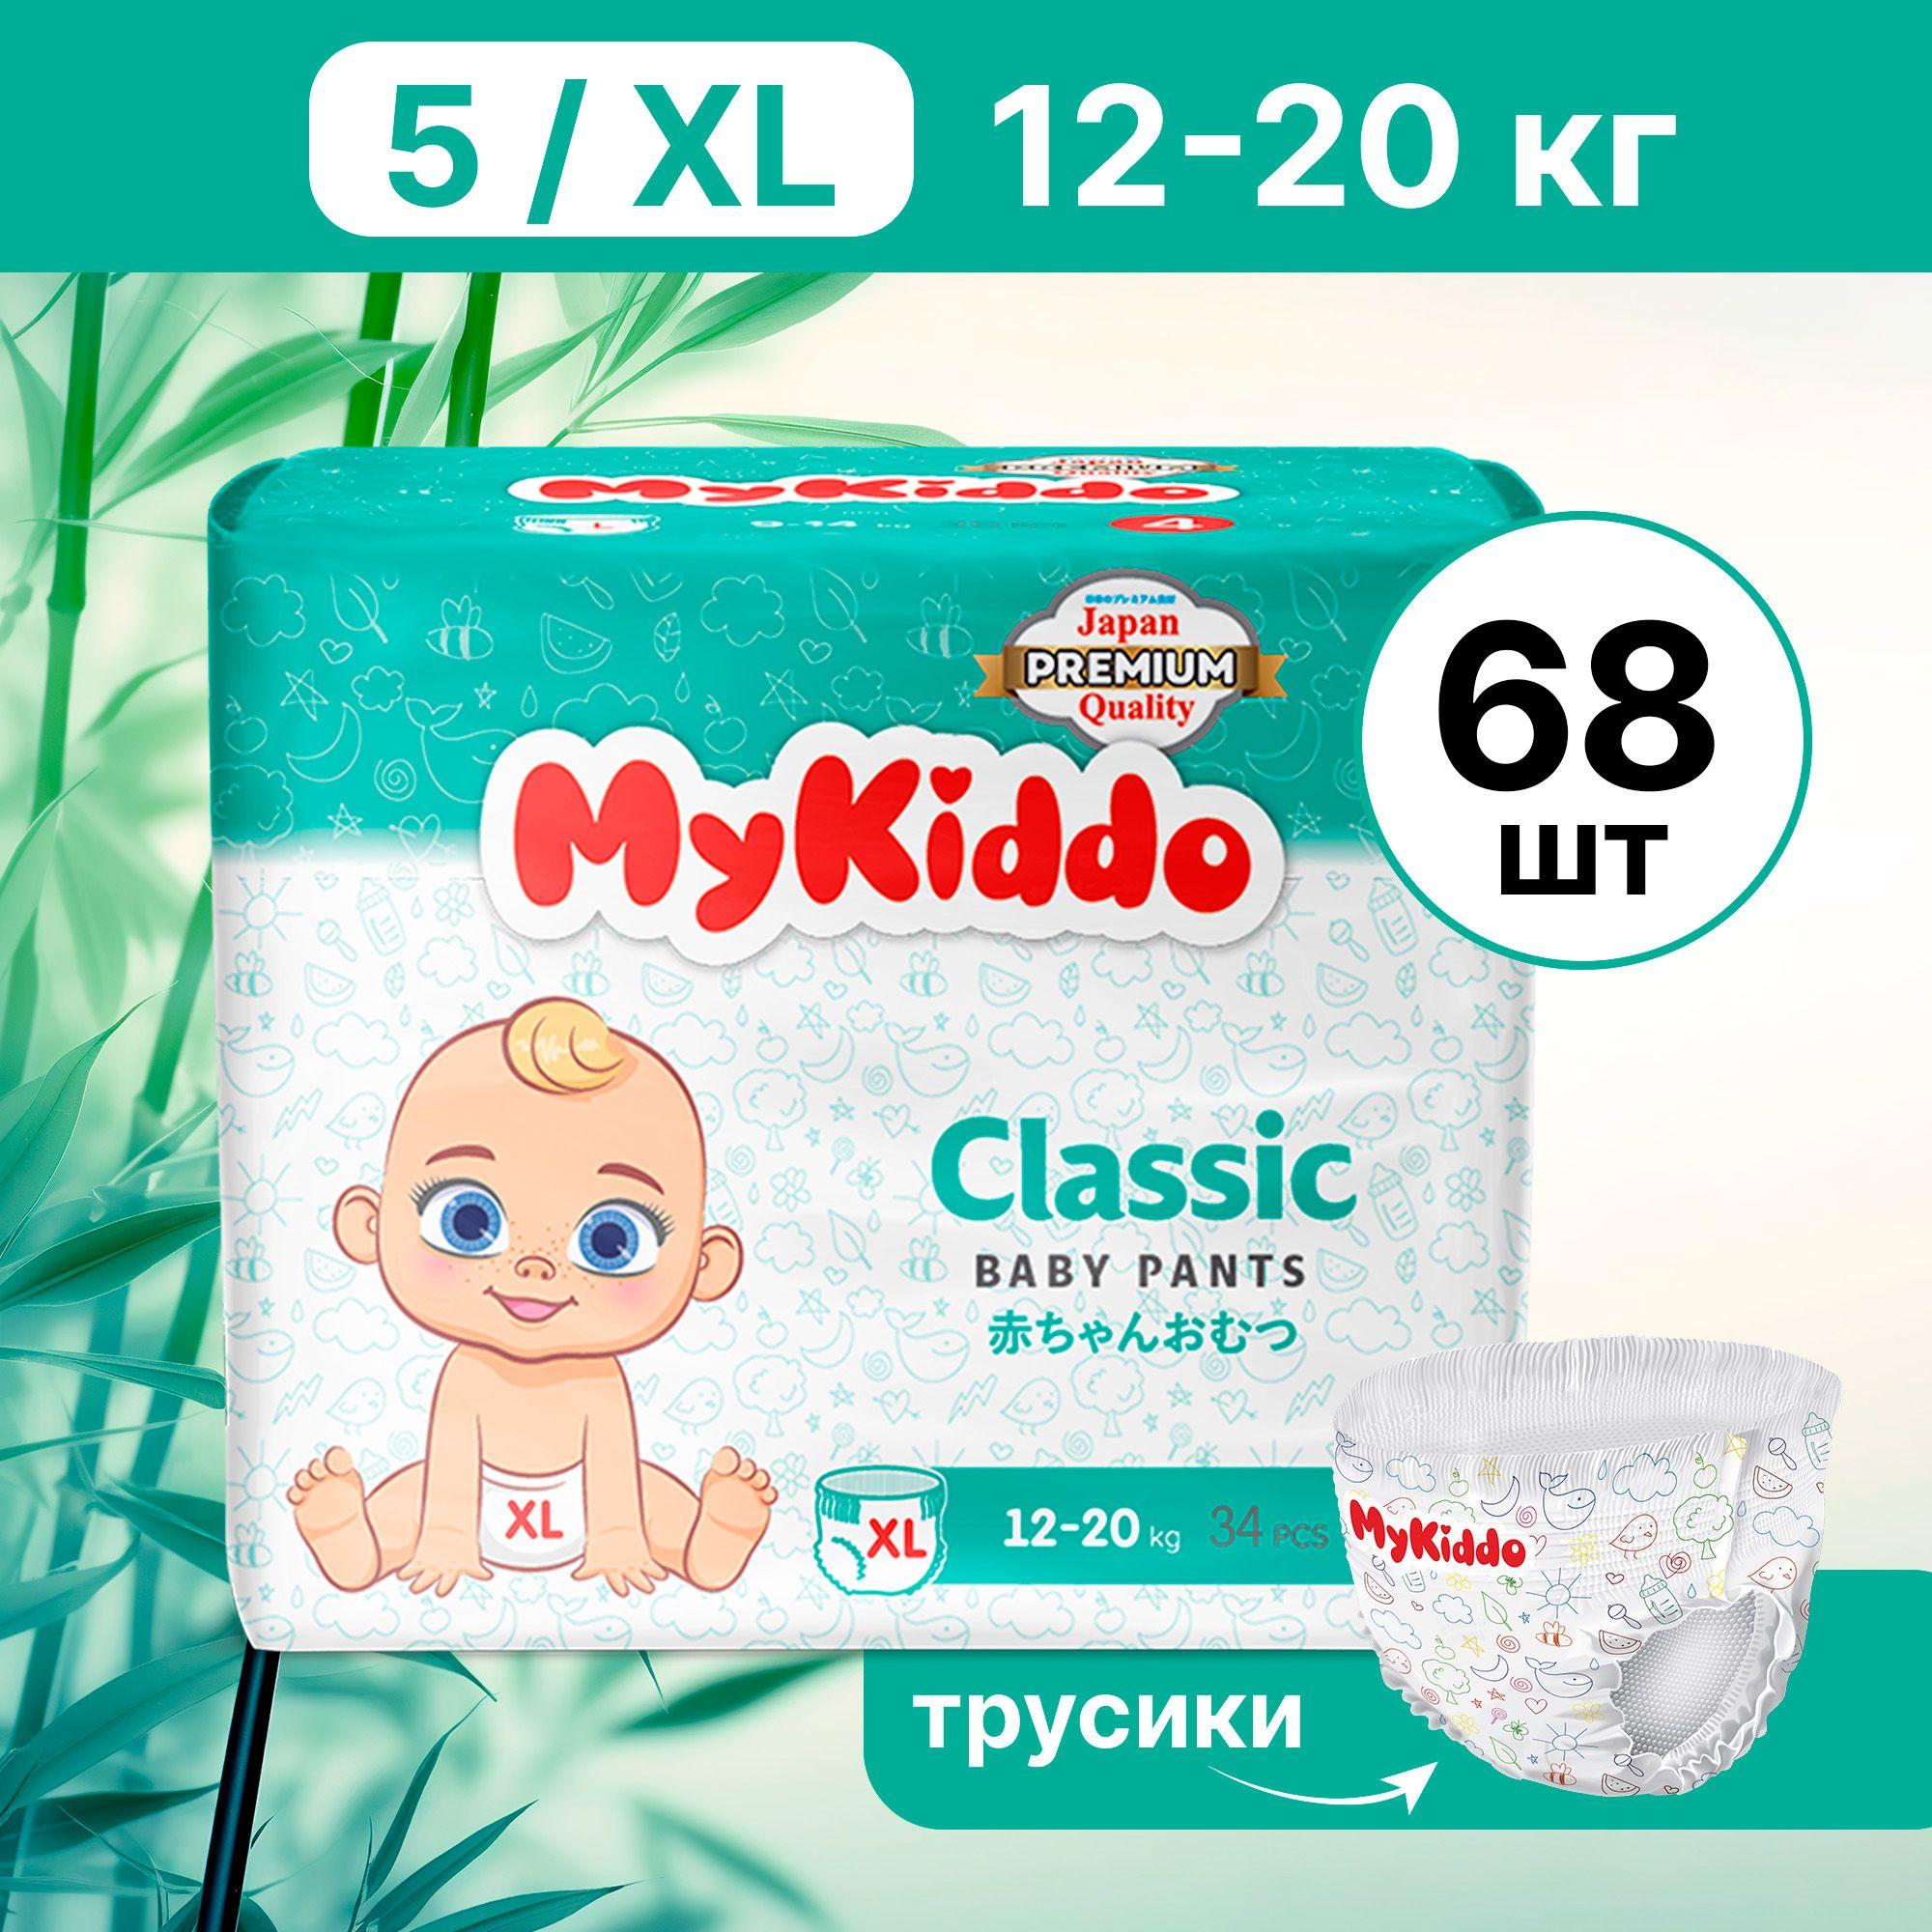 Подгузники трусики детские MyKiddo Classic размер 5 XL, для детей весом 12-20 кг, 68 шт. (2 упаковки по 34 шт.) мегабокс